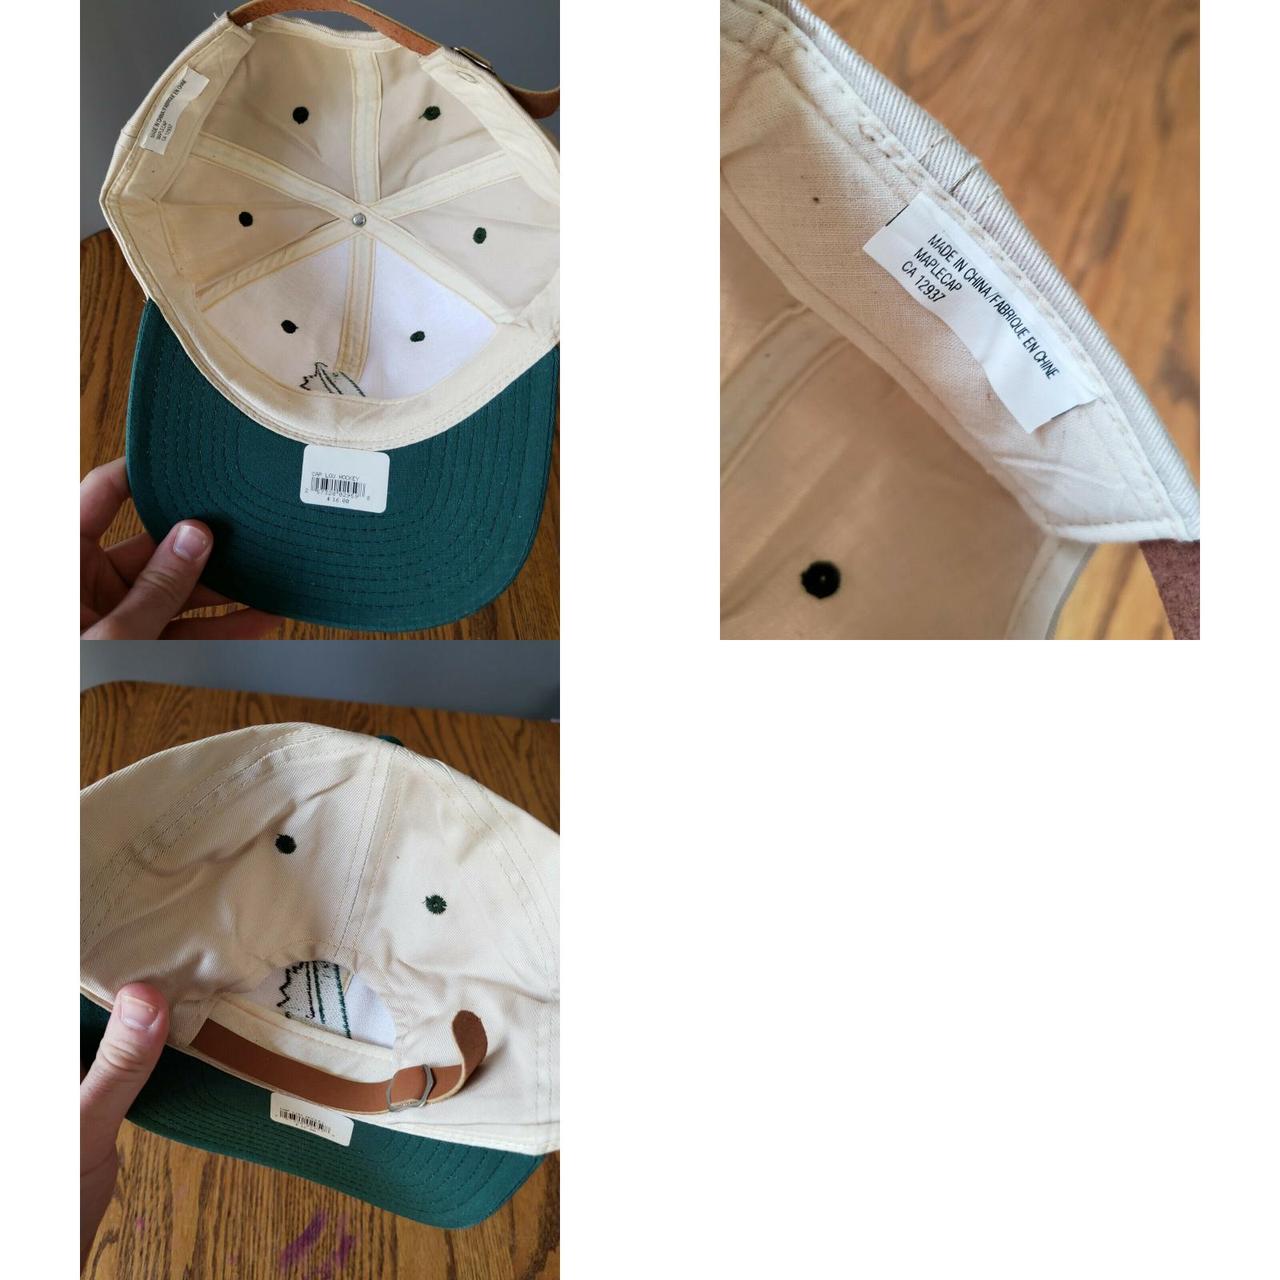 Men Hat by   Louisville slugger, Slugger, Sports caps